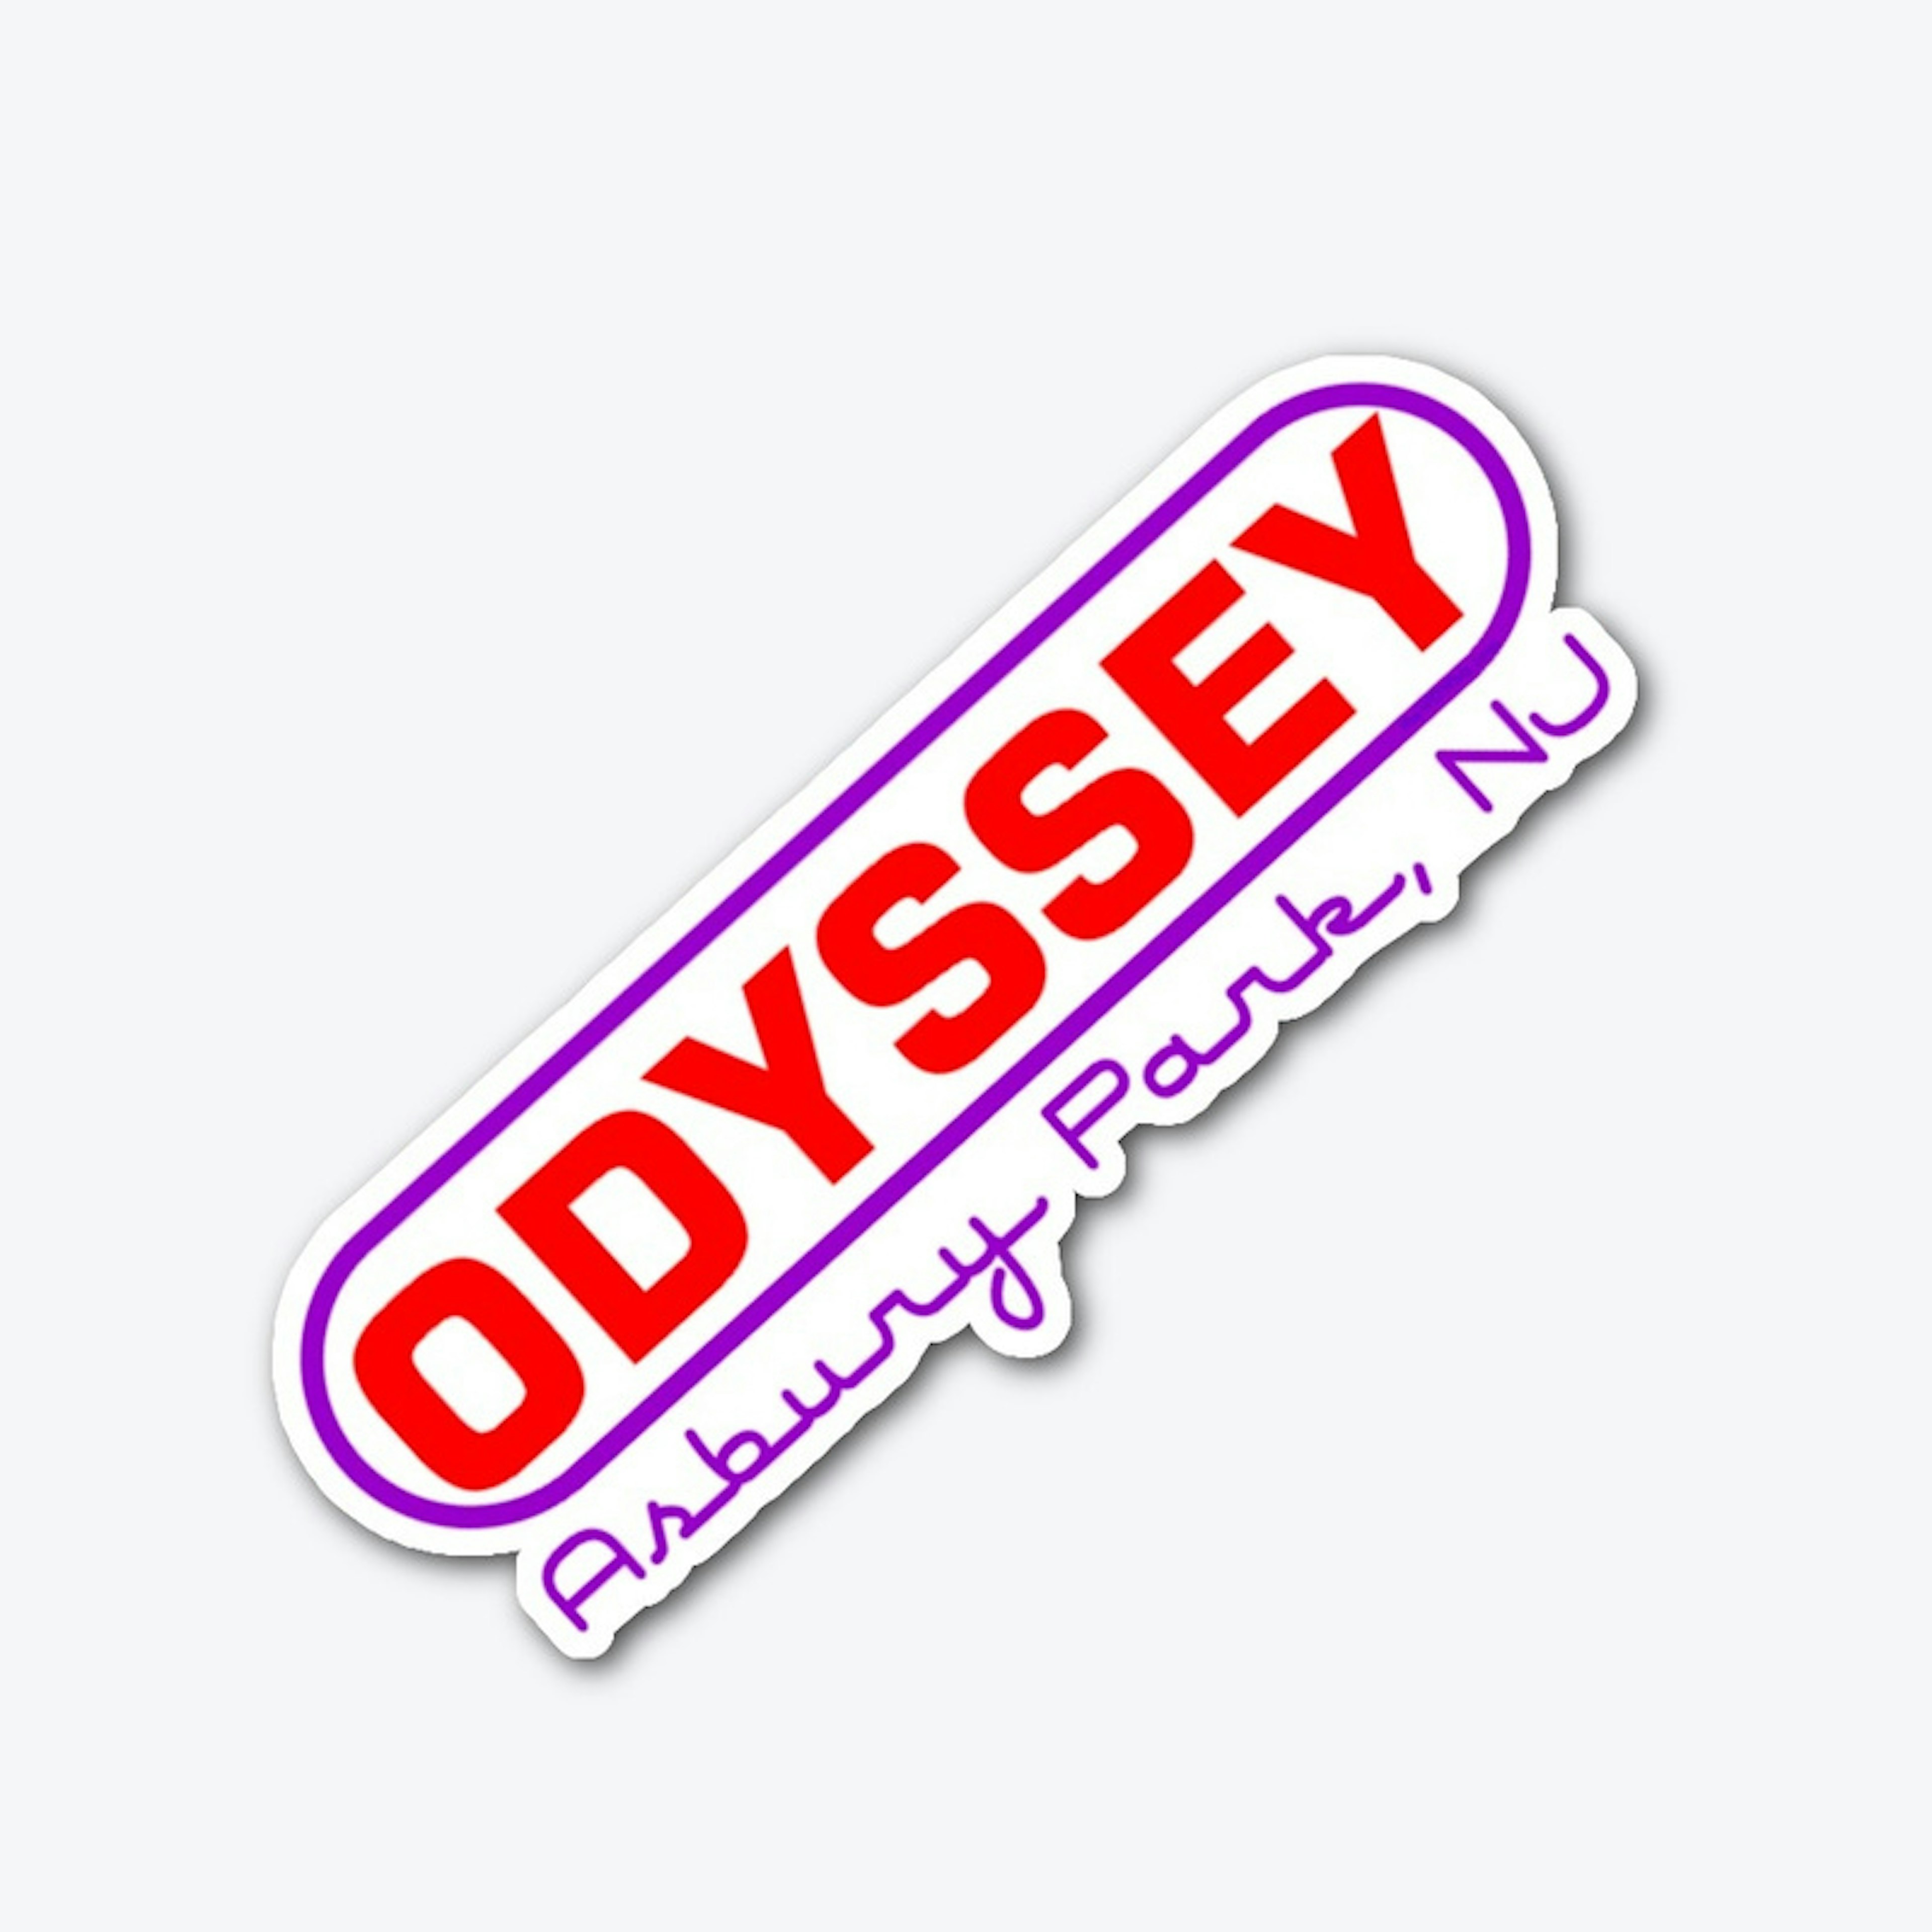 OdysseyAsbury